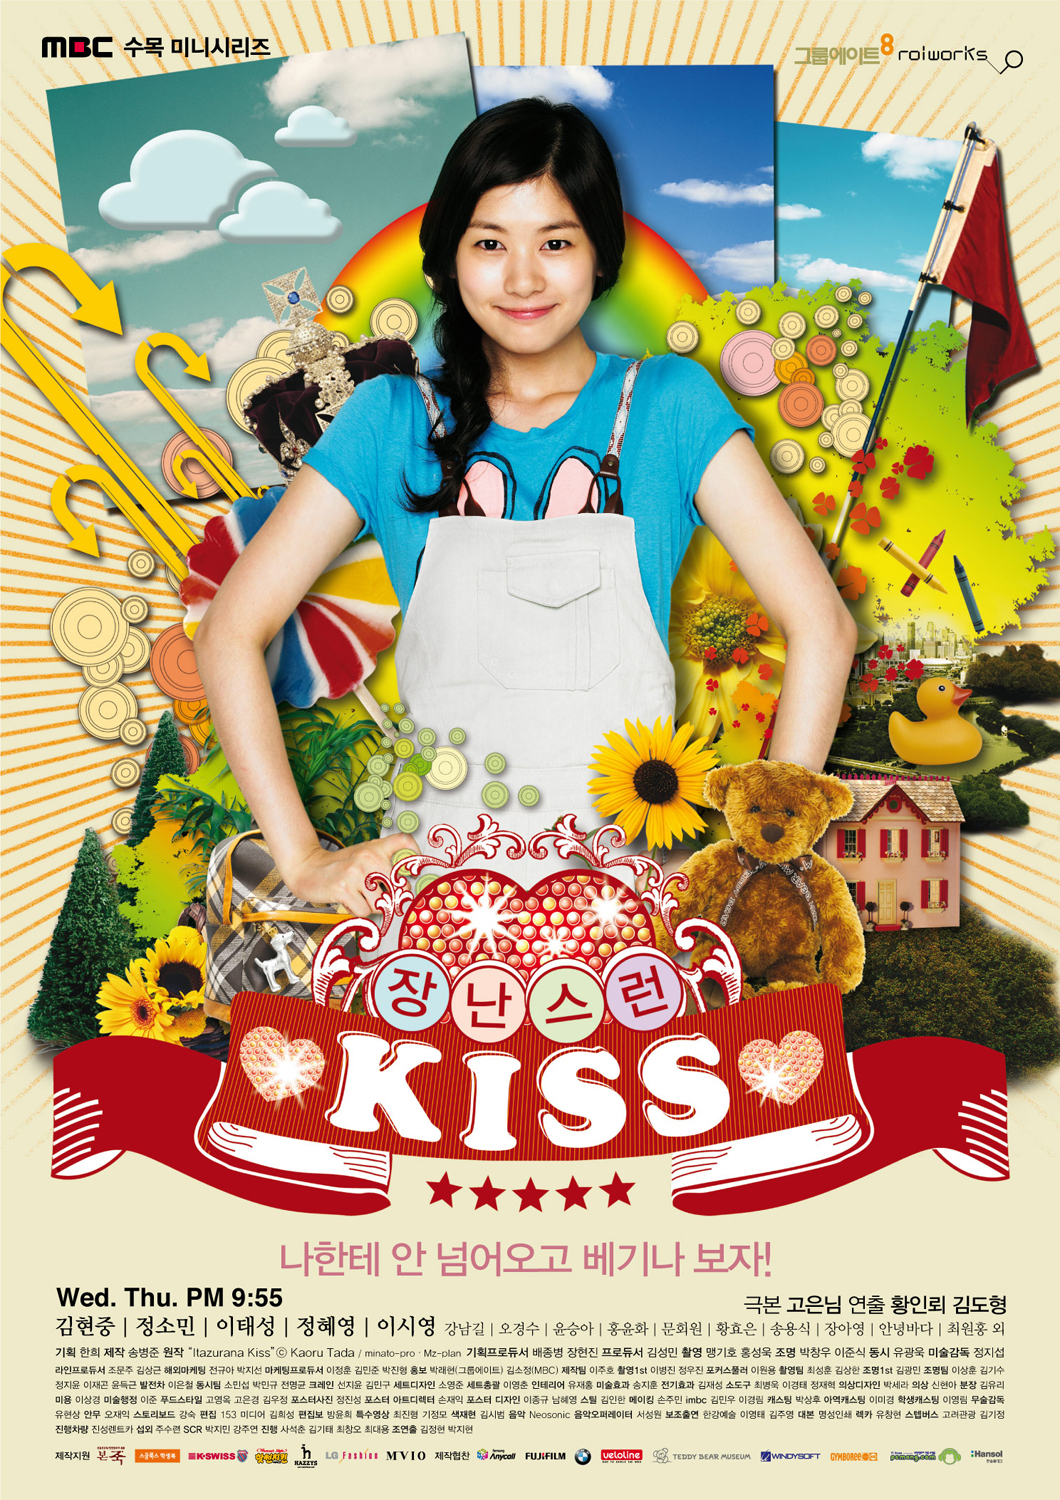 イタズラなKiss～Playful Kiss DVD 韓国ドラマ 韓流スター